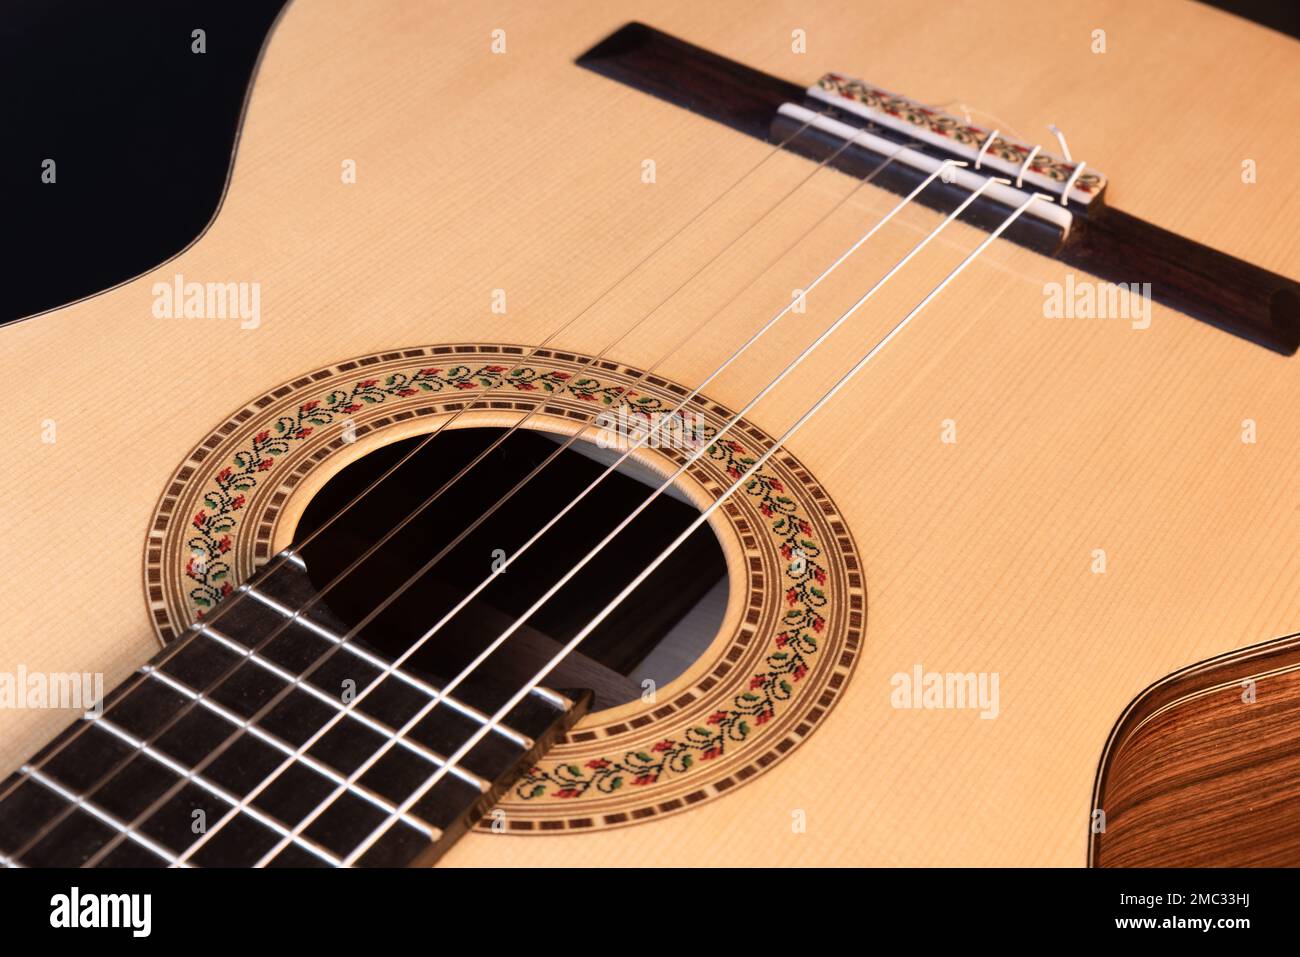 Klassische Gitarrenspitze isoliert auf schwarzem Hintergrund mit einer wunderschönen Mosaikrosette, Blick von der Oberseite. Wunderschönes brasilianisches Holz - Pau Ferro Stockfoto